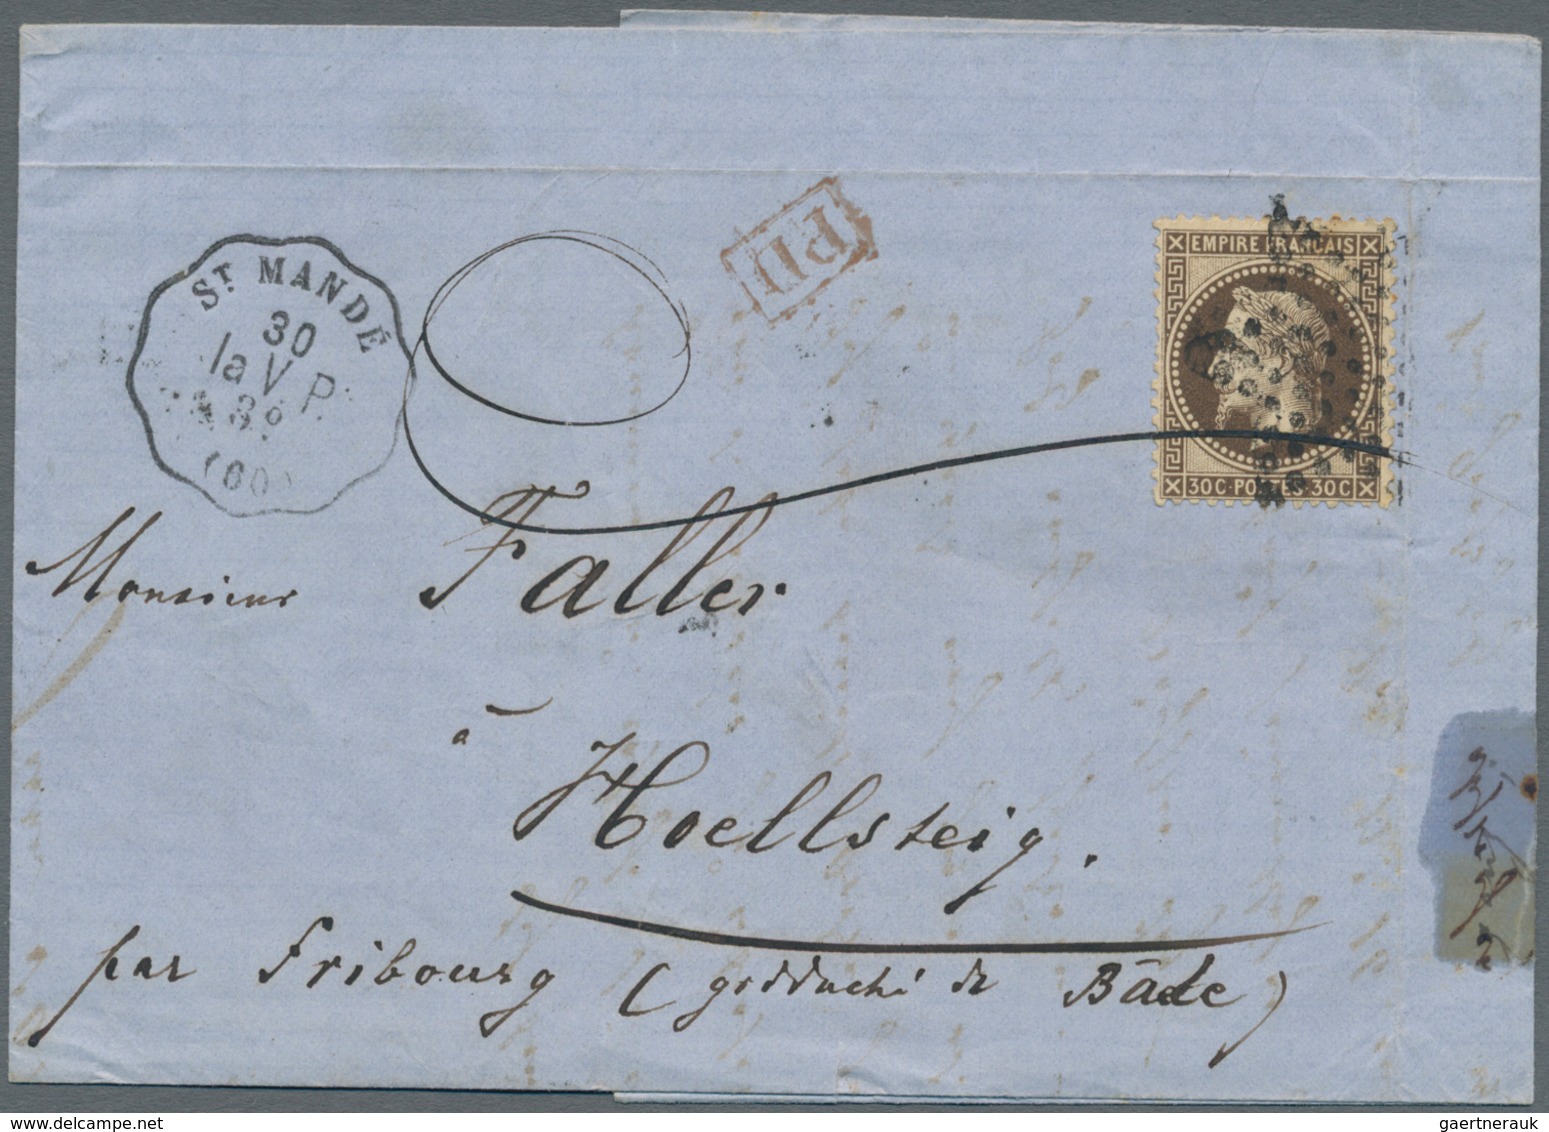 Frankreich - Besonderheiten: 1862 - 1942, postage stamp Napoleon 30 C brown on letter St. Mande to H